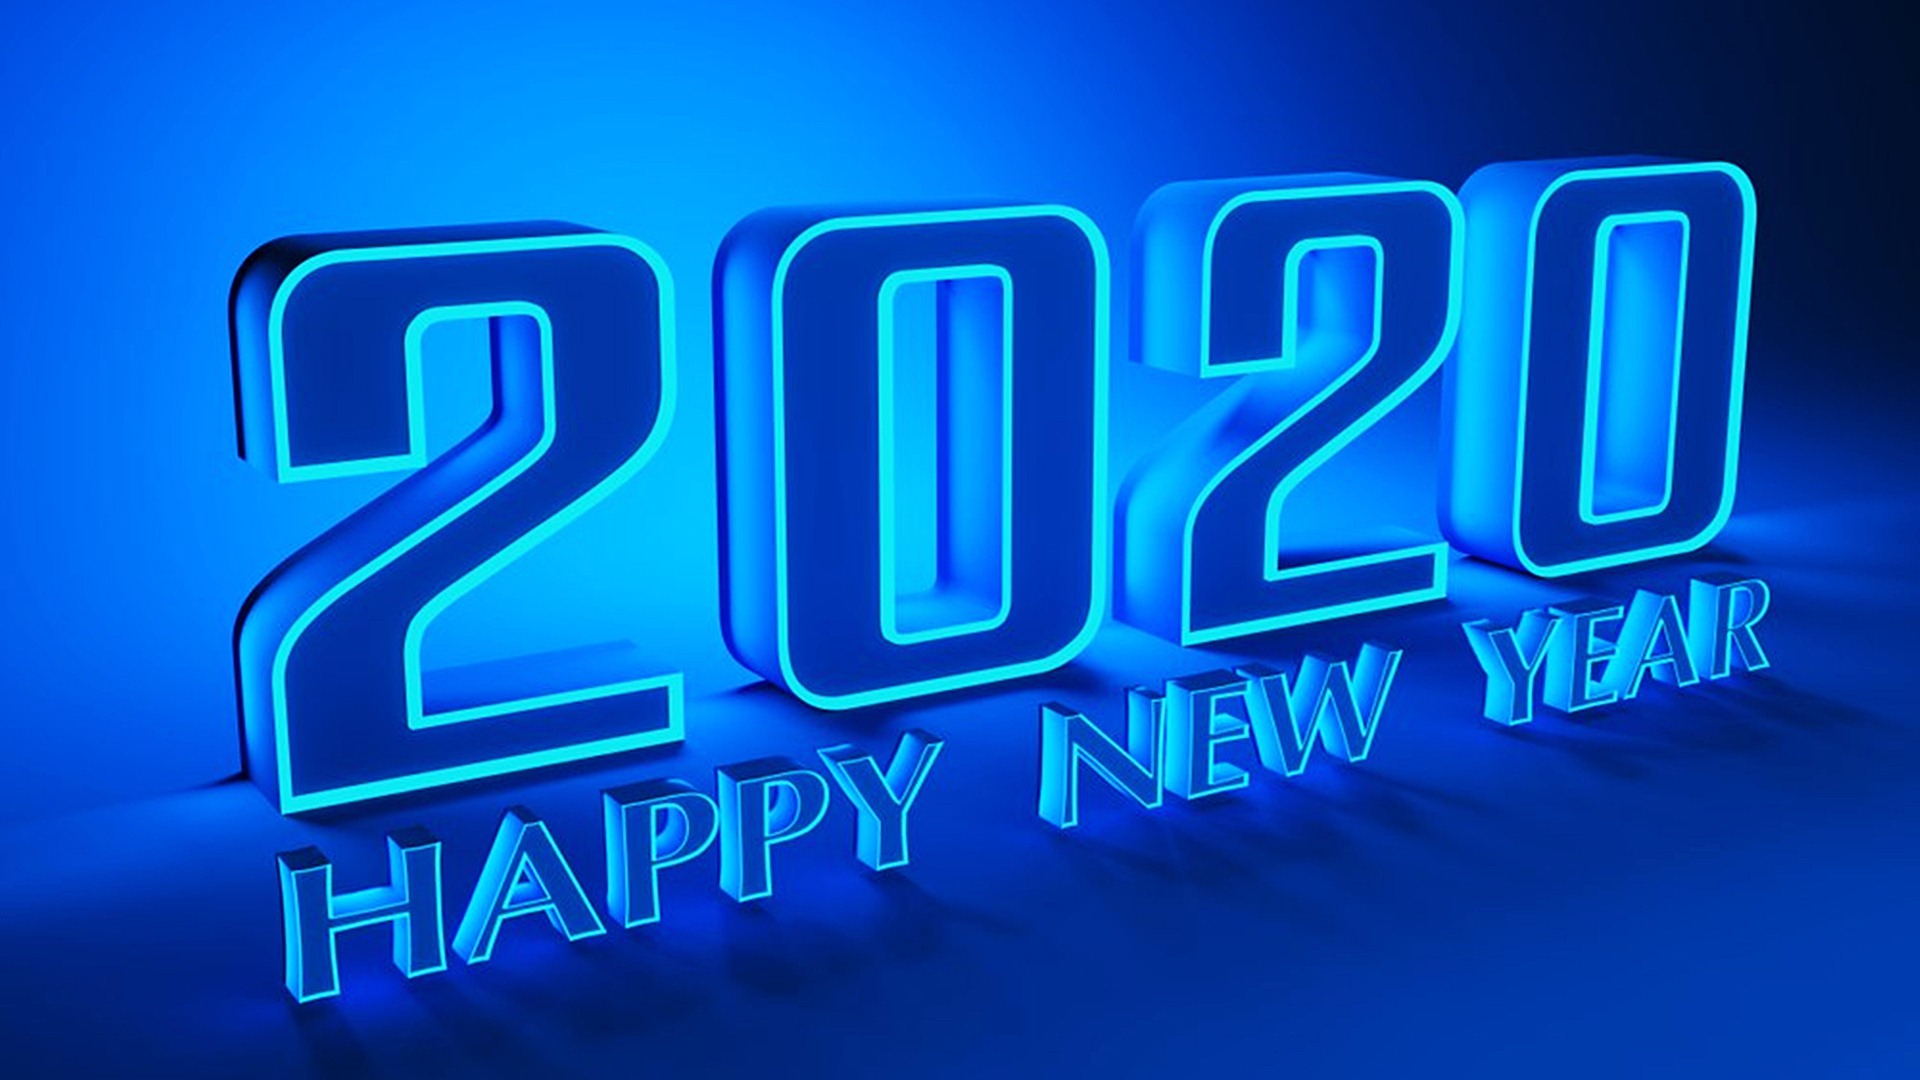 felice anno nuovo sfondo,testo,font,blu elettrico,blu,neon